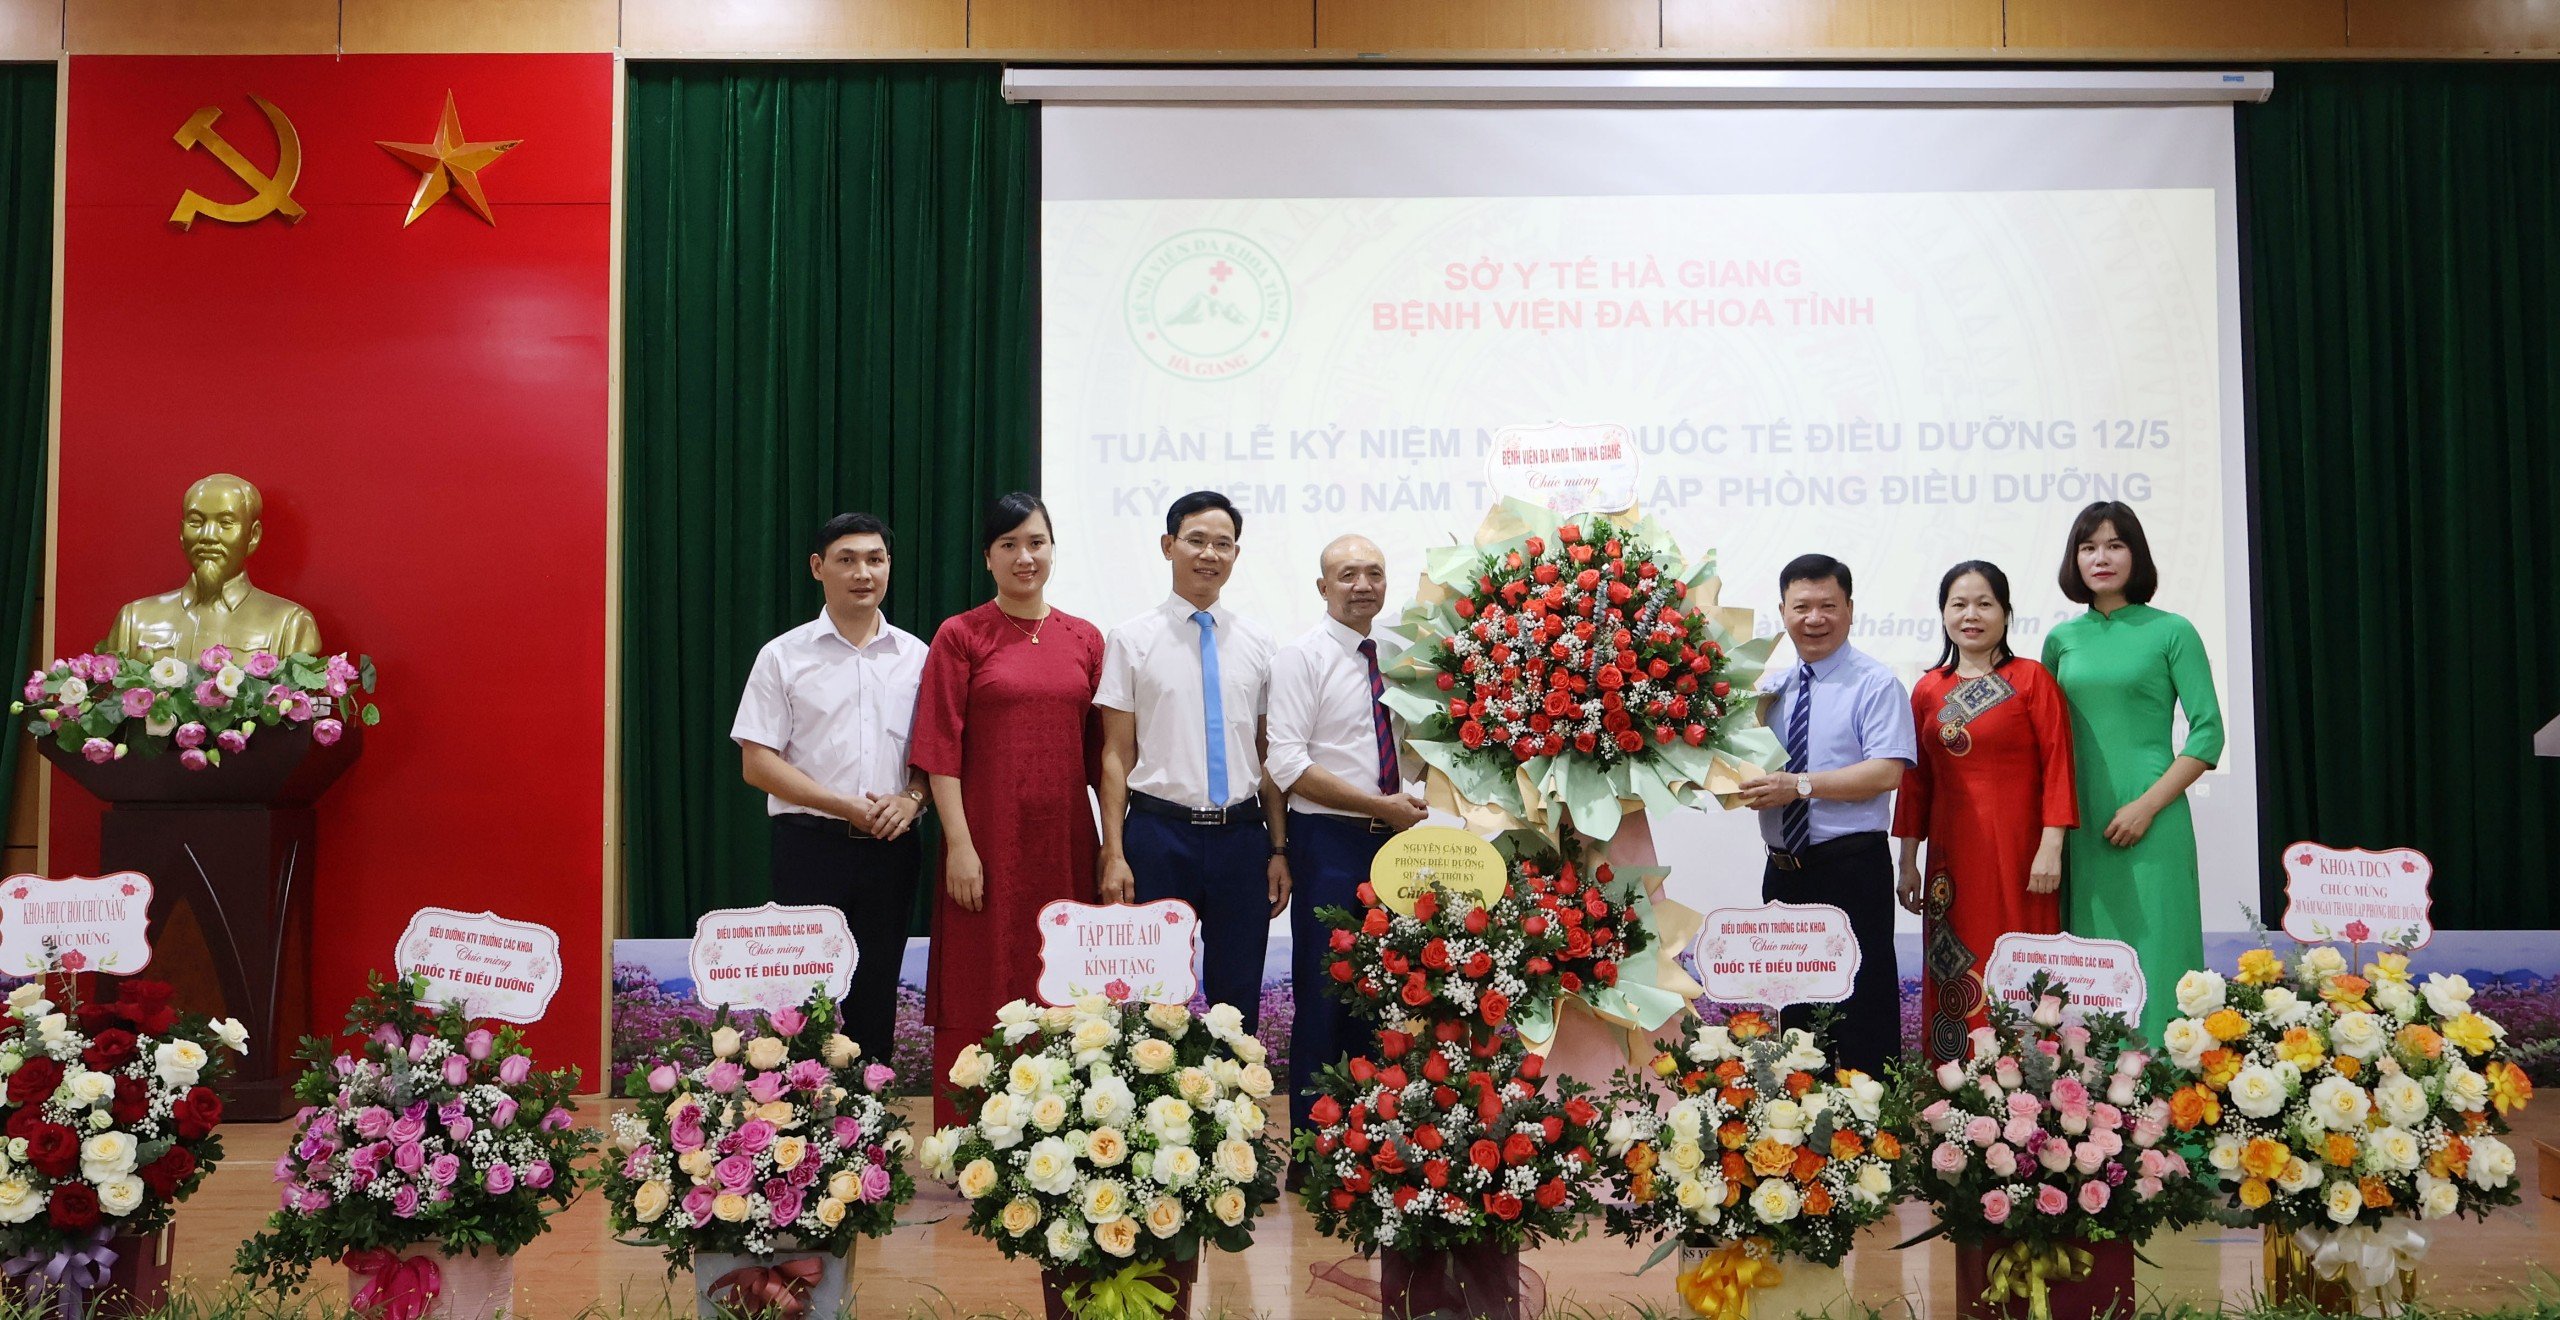 Đồng chí Nguyễn Quốc Dũng – Phó Giám đốc BVĐK tỉnh tặng hoa chúc mừng